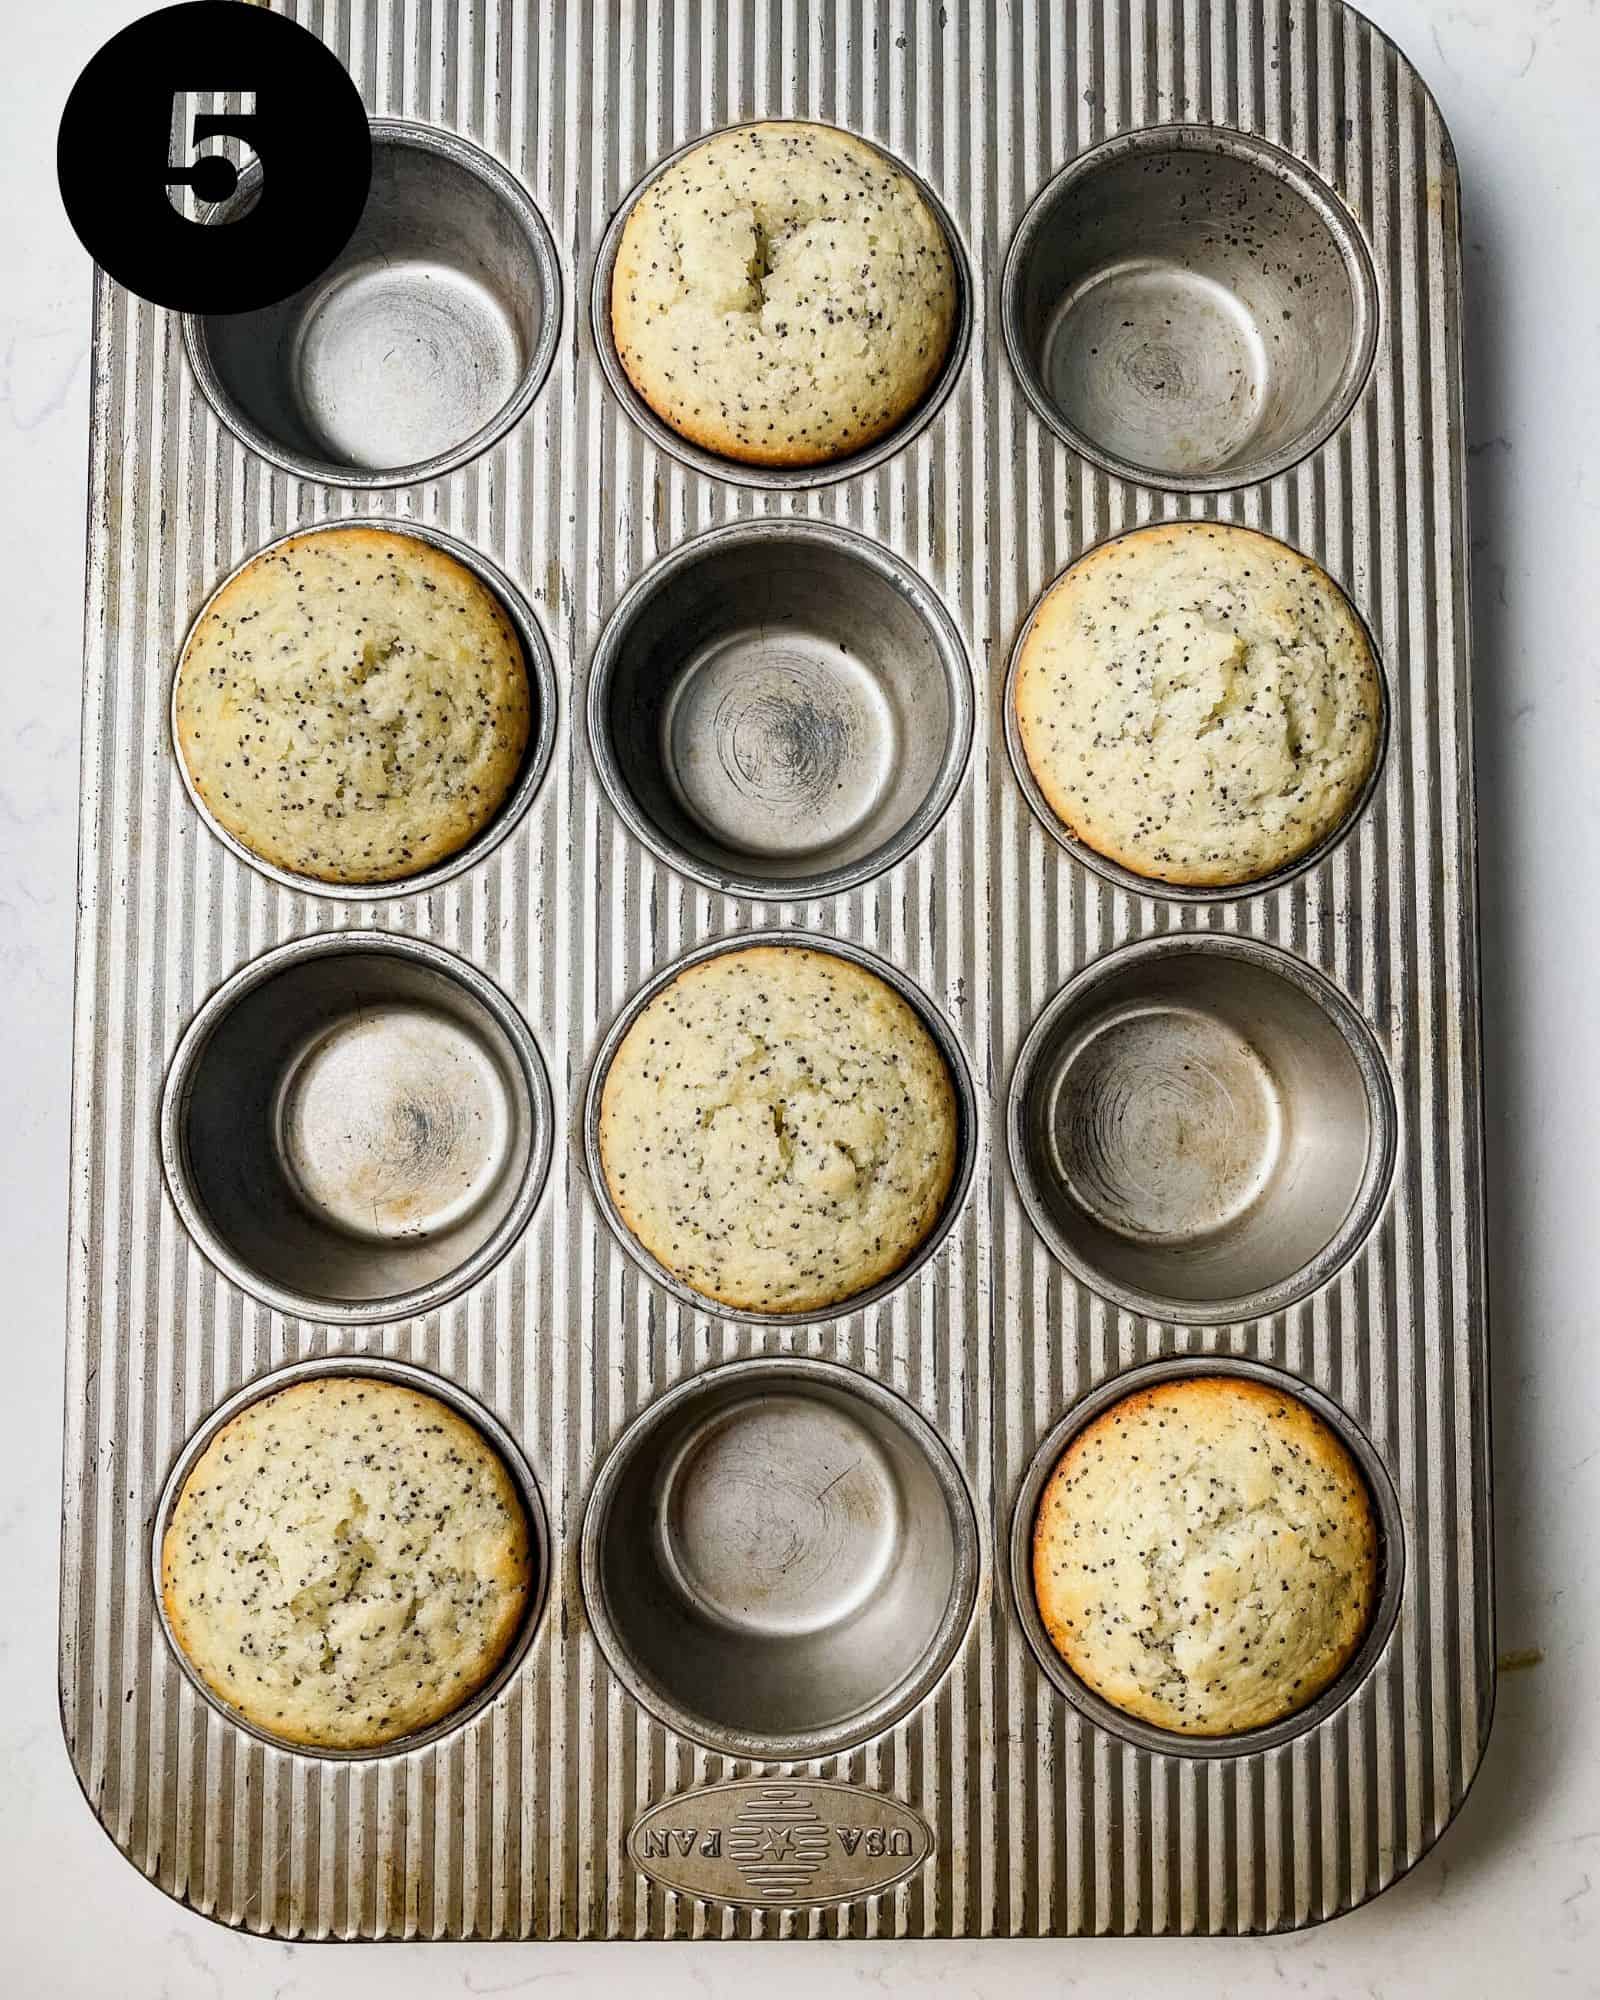 muffins in a muffin tin.